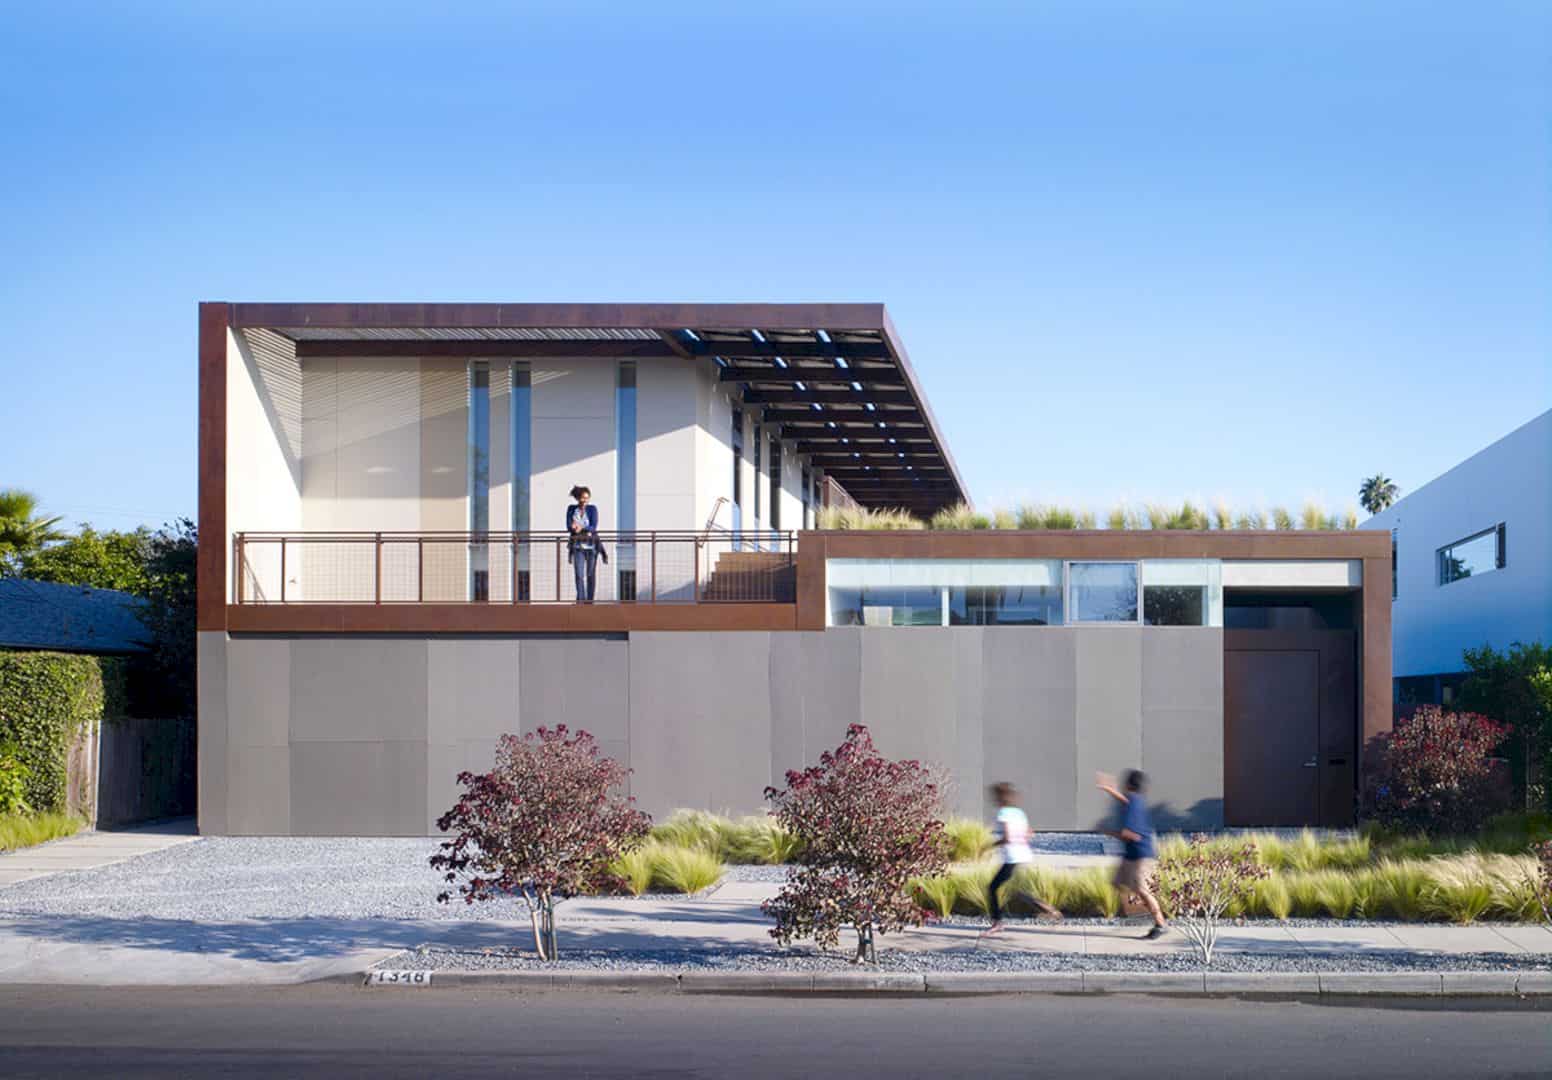 The Yin Yang House A Net Zero Energy Family Home In Quiet California Neighborhood 16